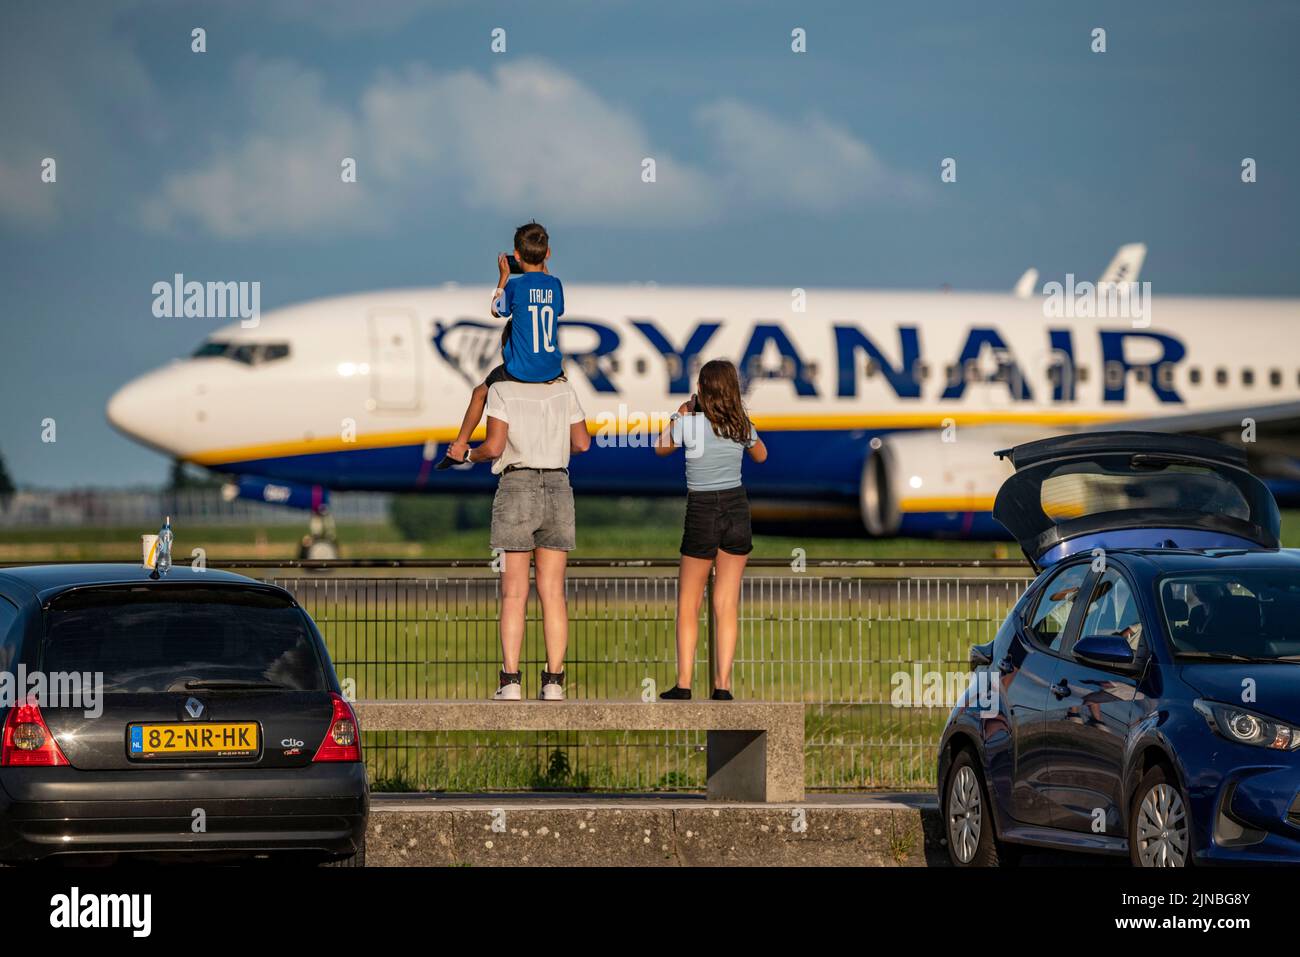 Aeroporto di Amsterdam Shiphol, Ponderbaan, una delle 6 piste, punto di osservazione, vedere gli aerei da vicino, Ryanair, Foto Stock